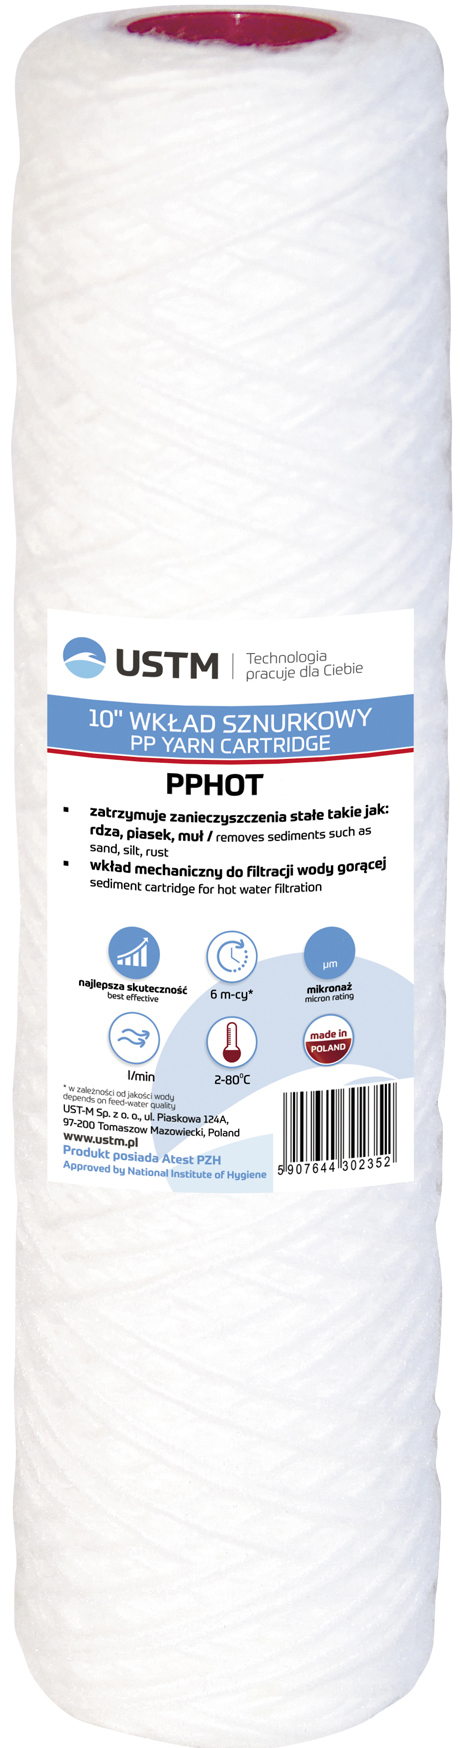 USTM PP-HOT5